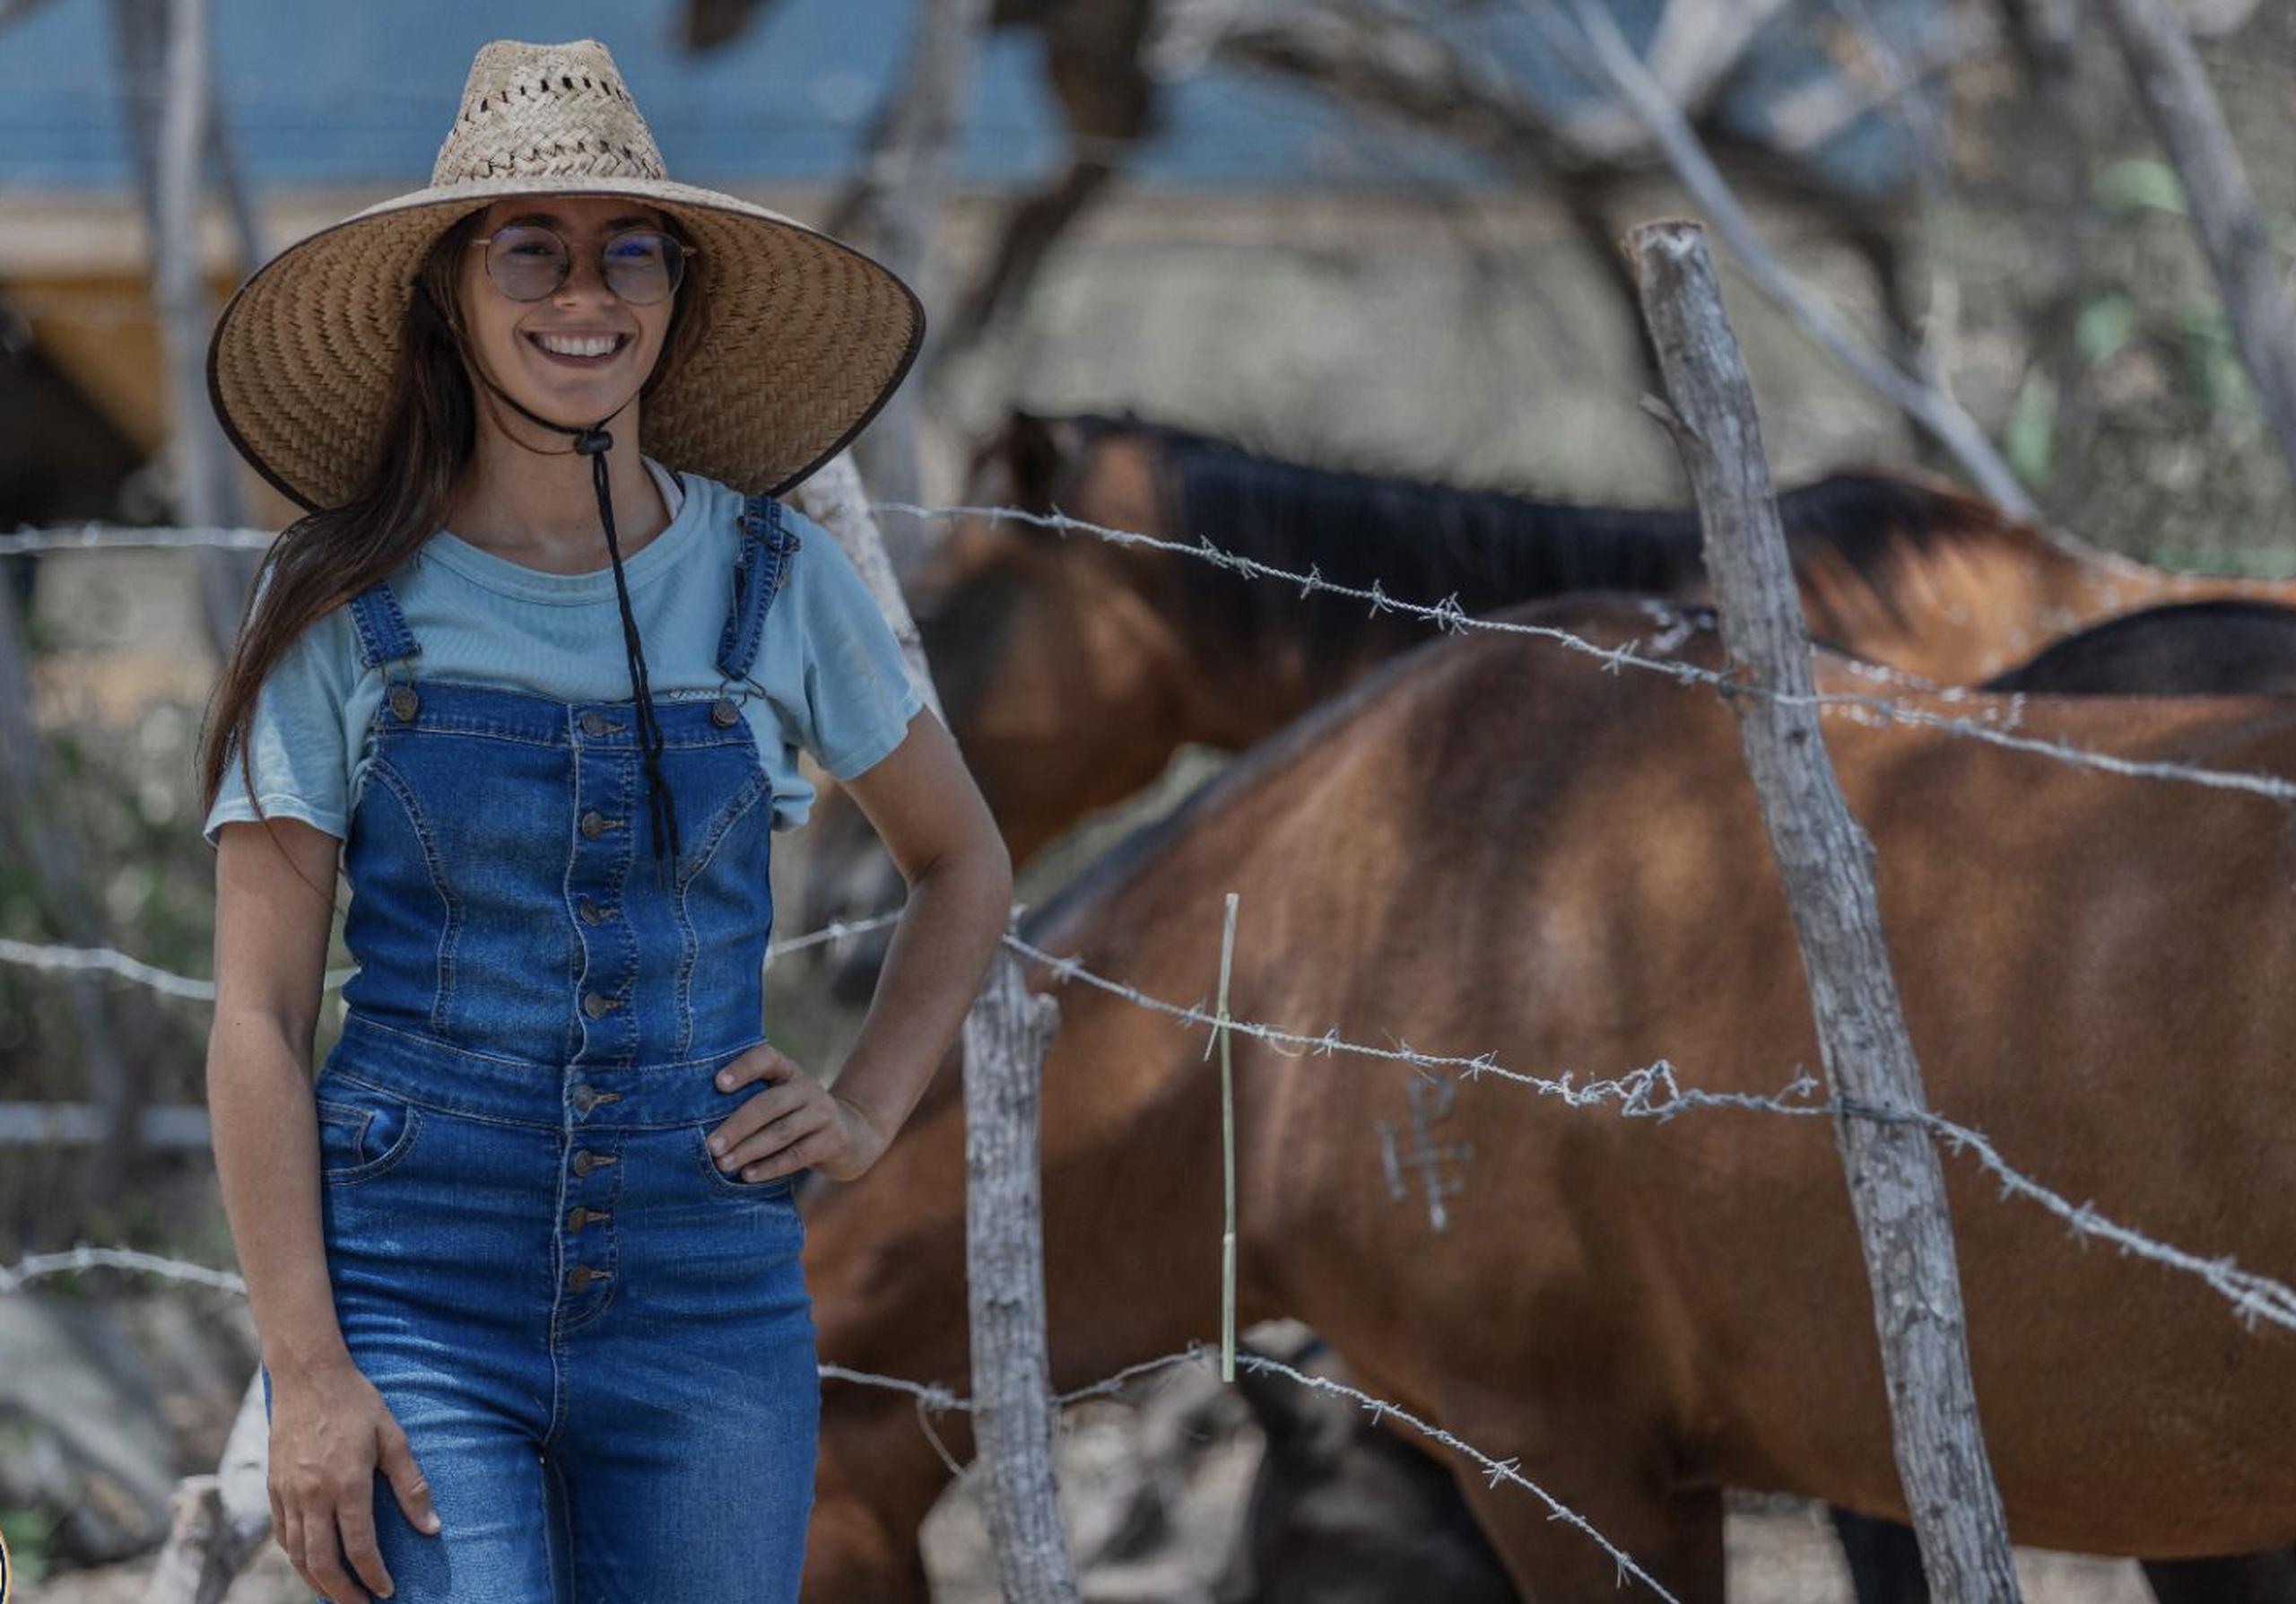 Jonaisa Morales Alicea, quien se identifica como agroempresaria feminista, persigue educar a la comunidad para hacer del País un lugar sostenible y sustentable.